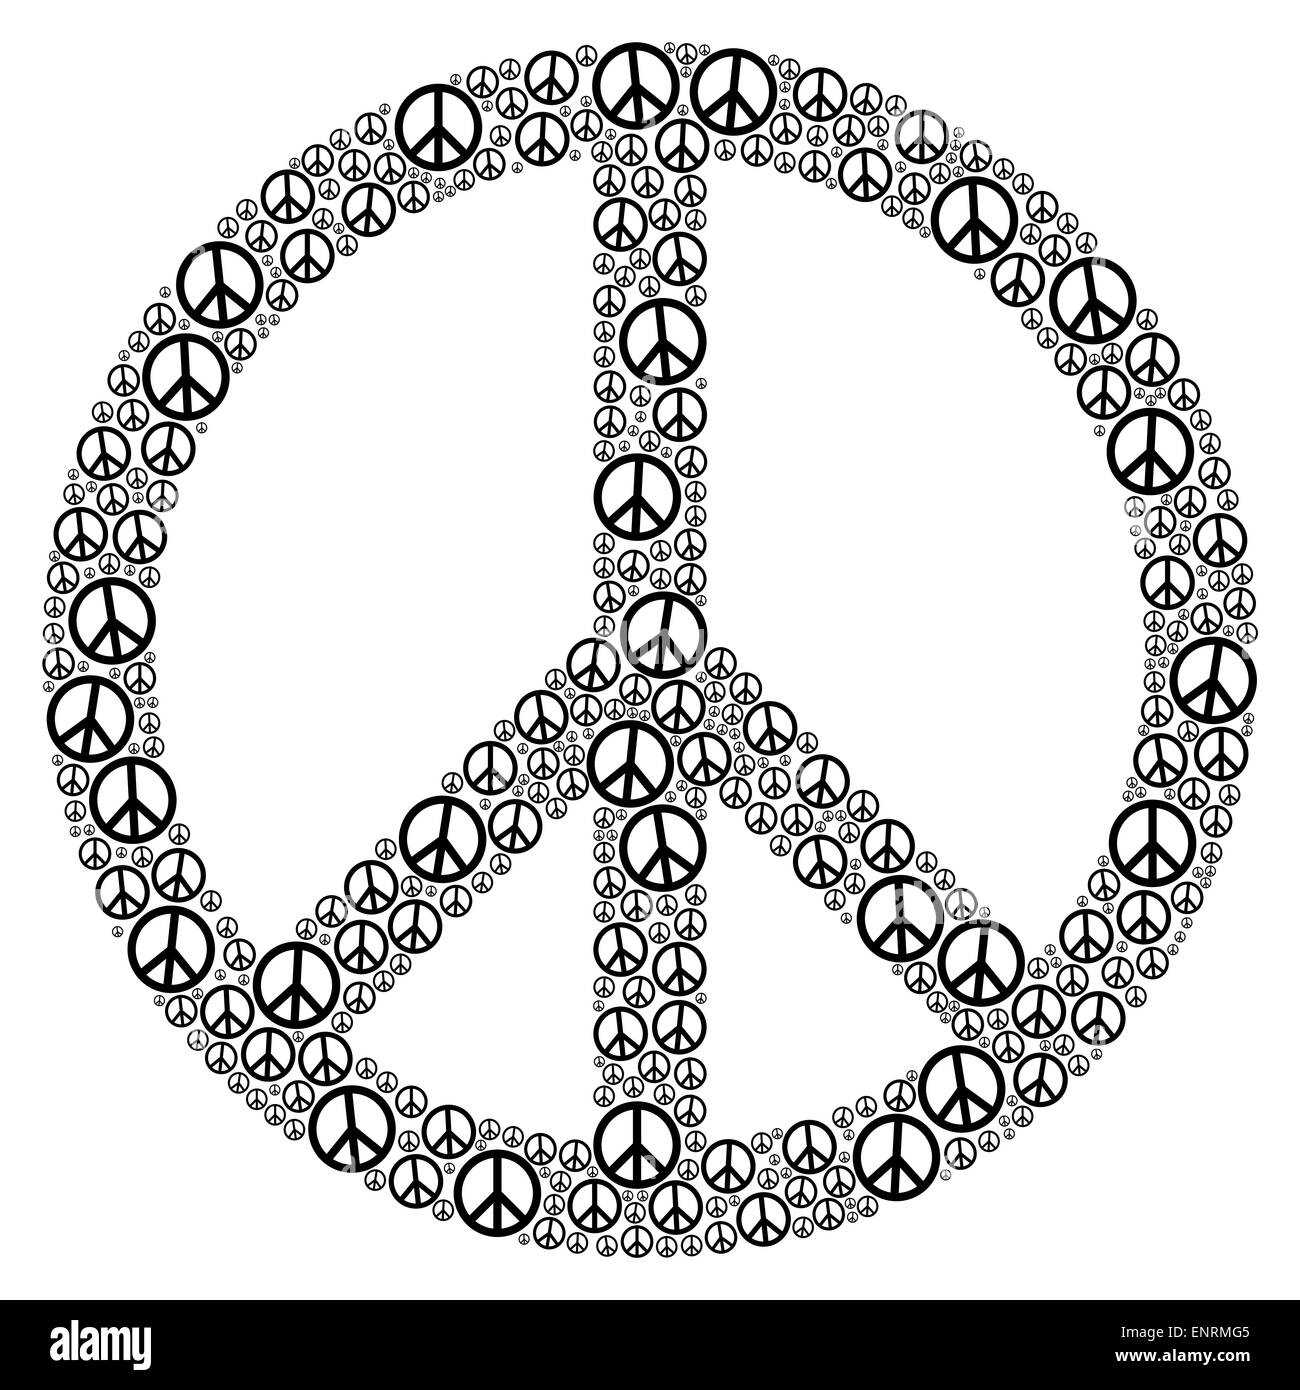 Segno di pace formata da molti piccoli simboli di pace. Immagine su sfondo bianco. Foto Stock